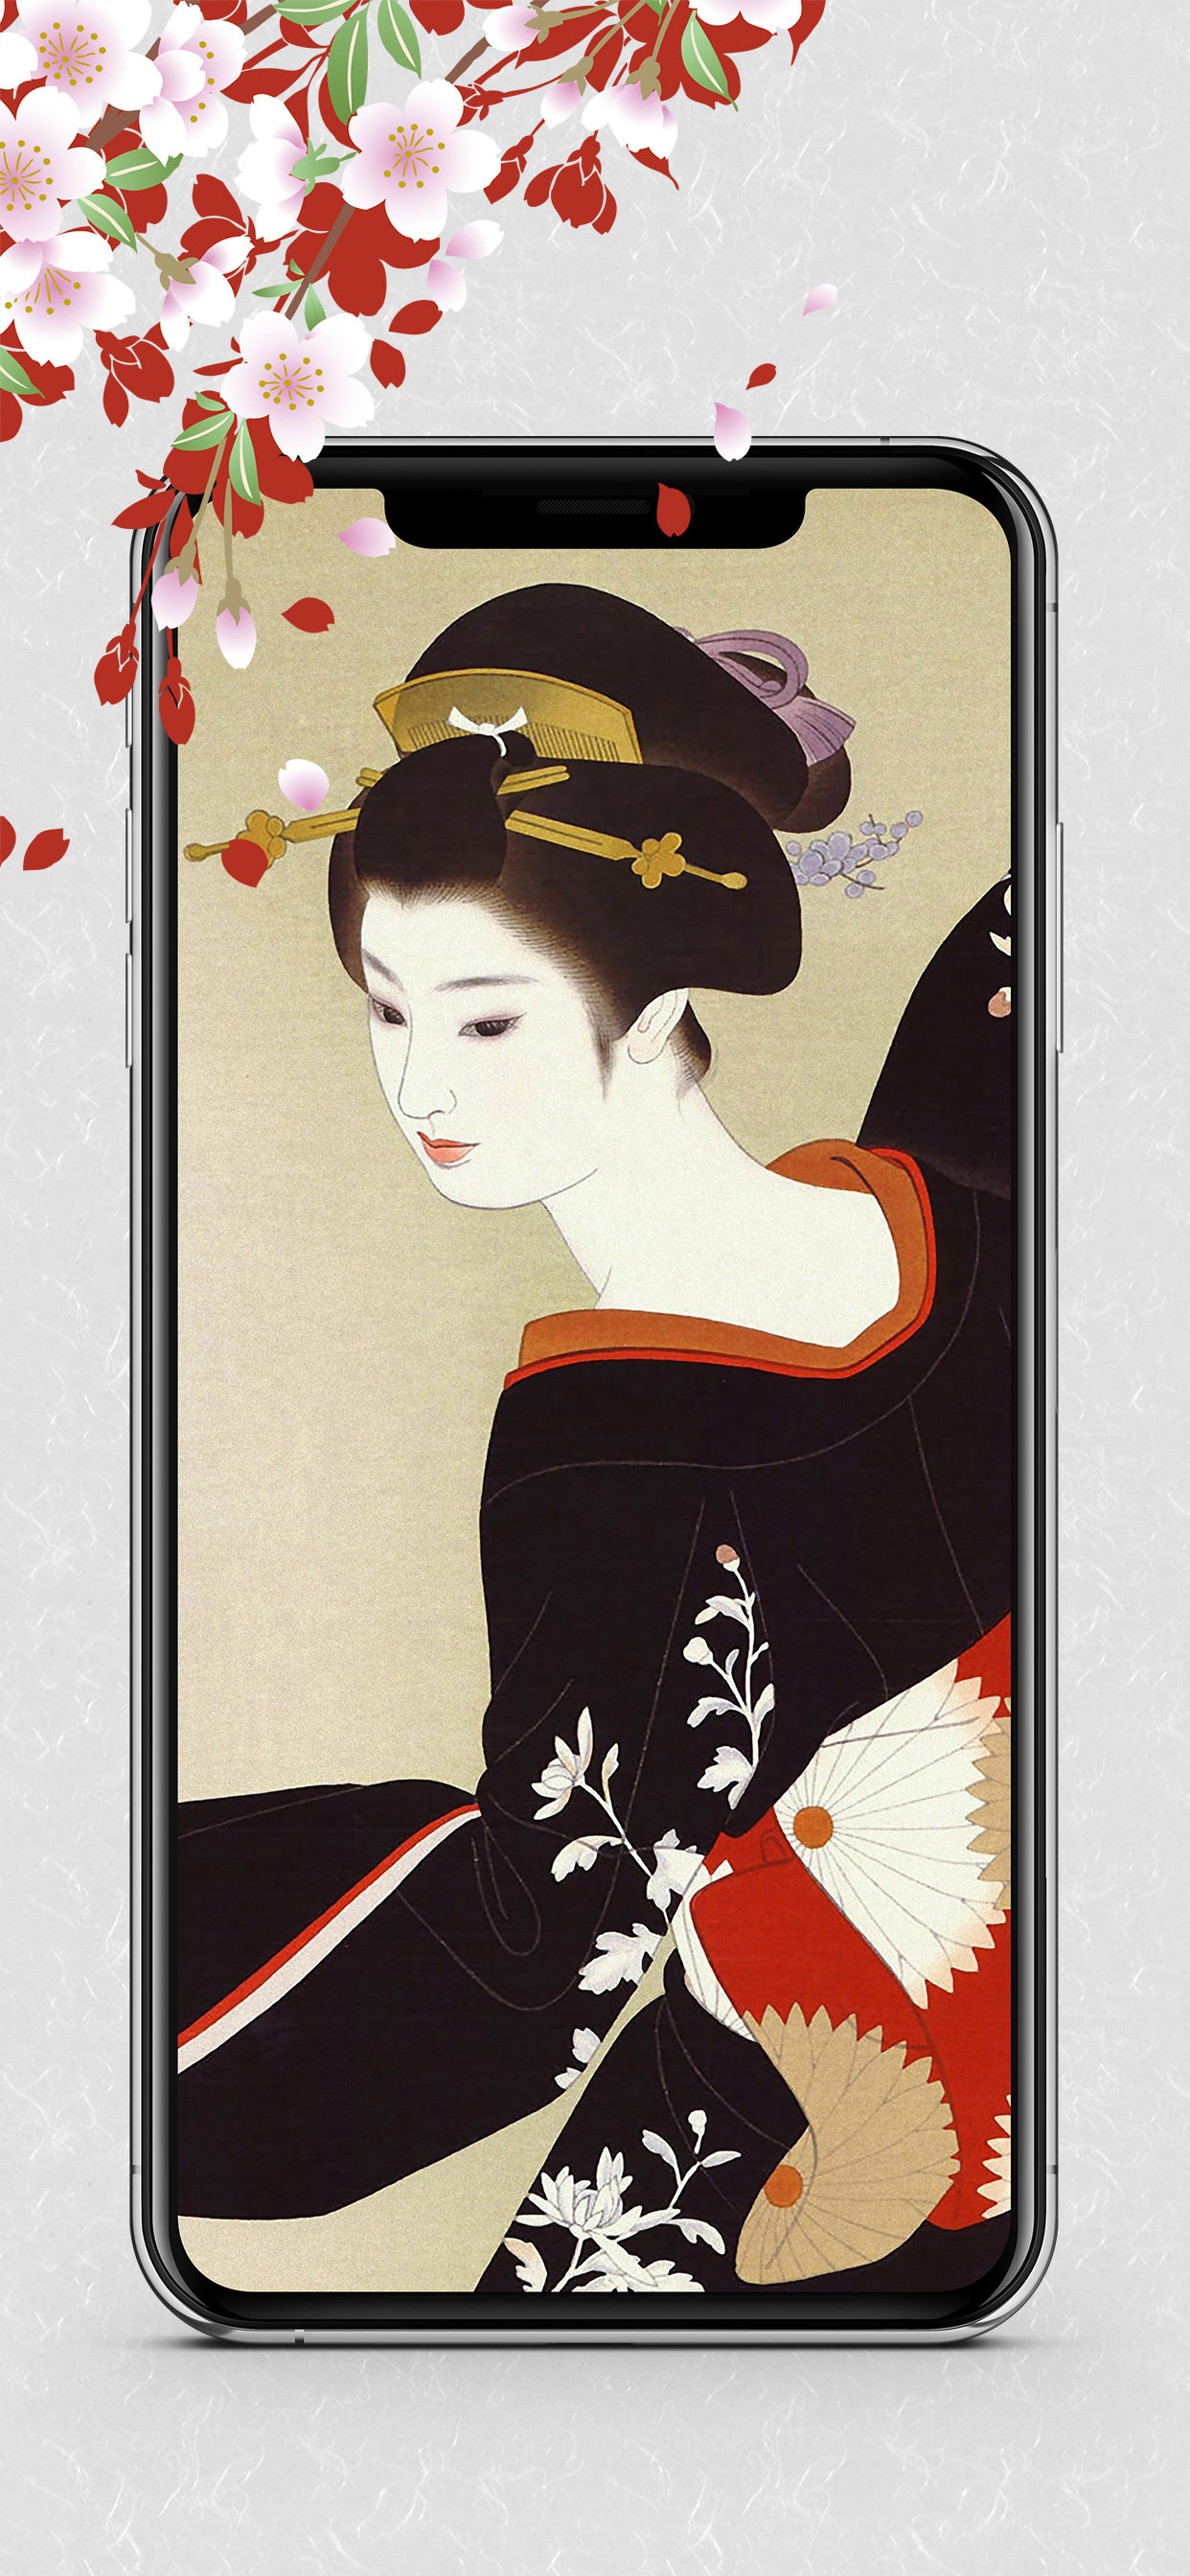 廣川政樹ポートフォリオ Dolice Design Iphone Android App Ukiyo E